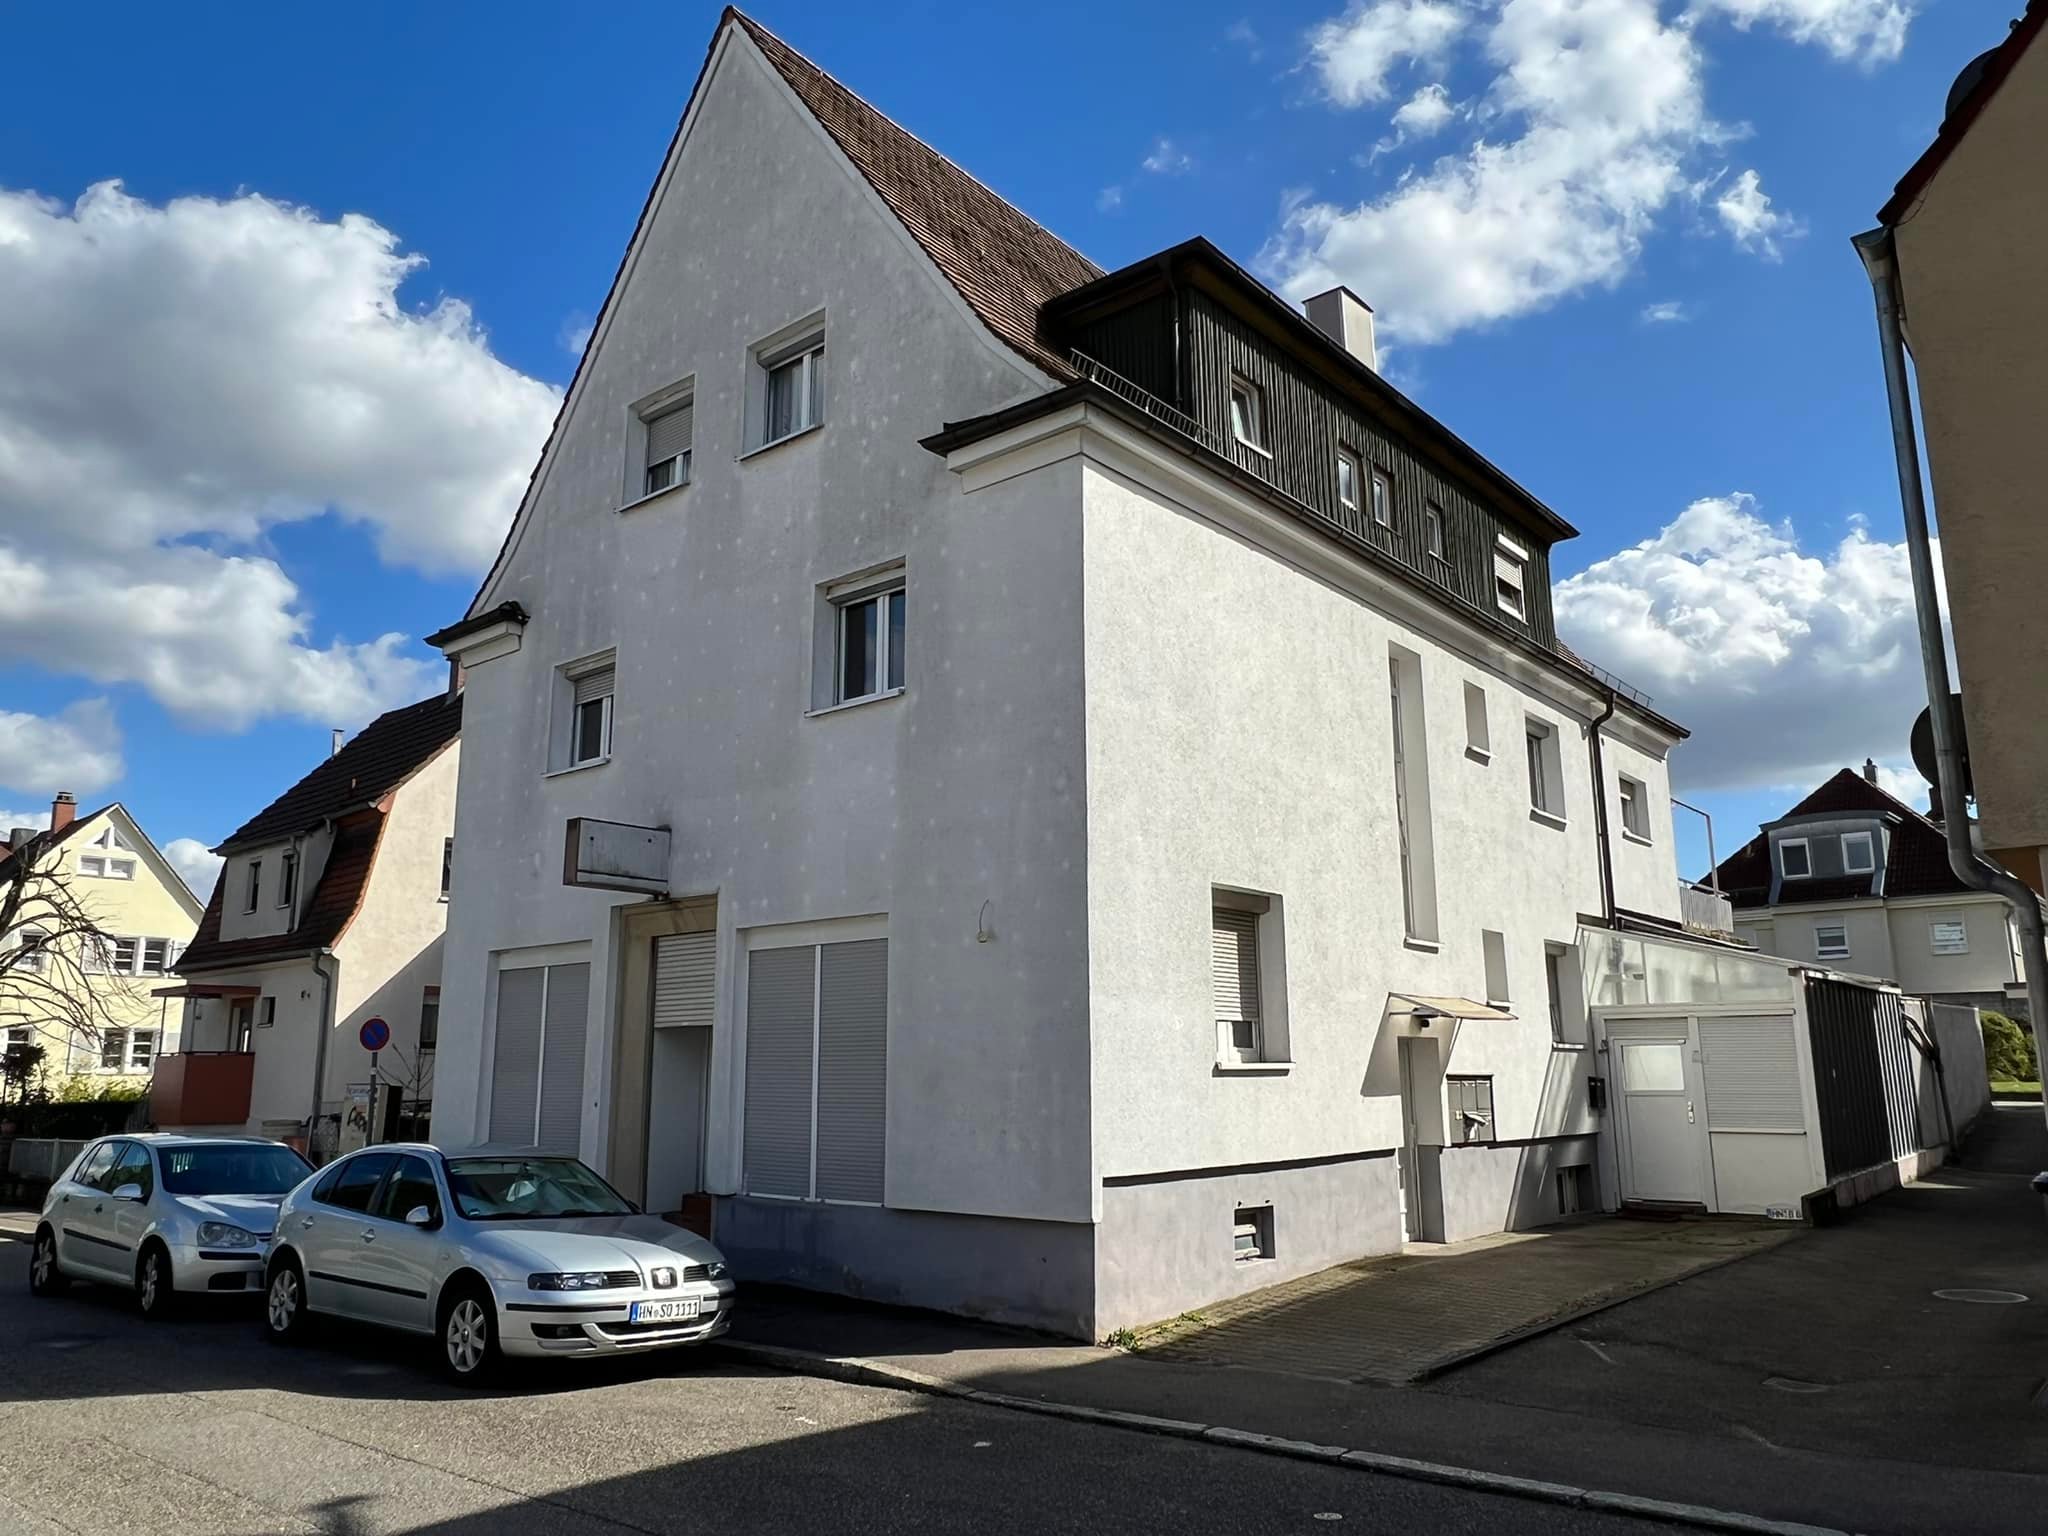 Heilbronn Mehrfamilienhaus zum Kauf 6 Wohnungen Wohneinheiten Immobilienmakler Haus kaufen Frontansicht